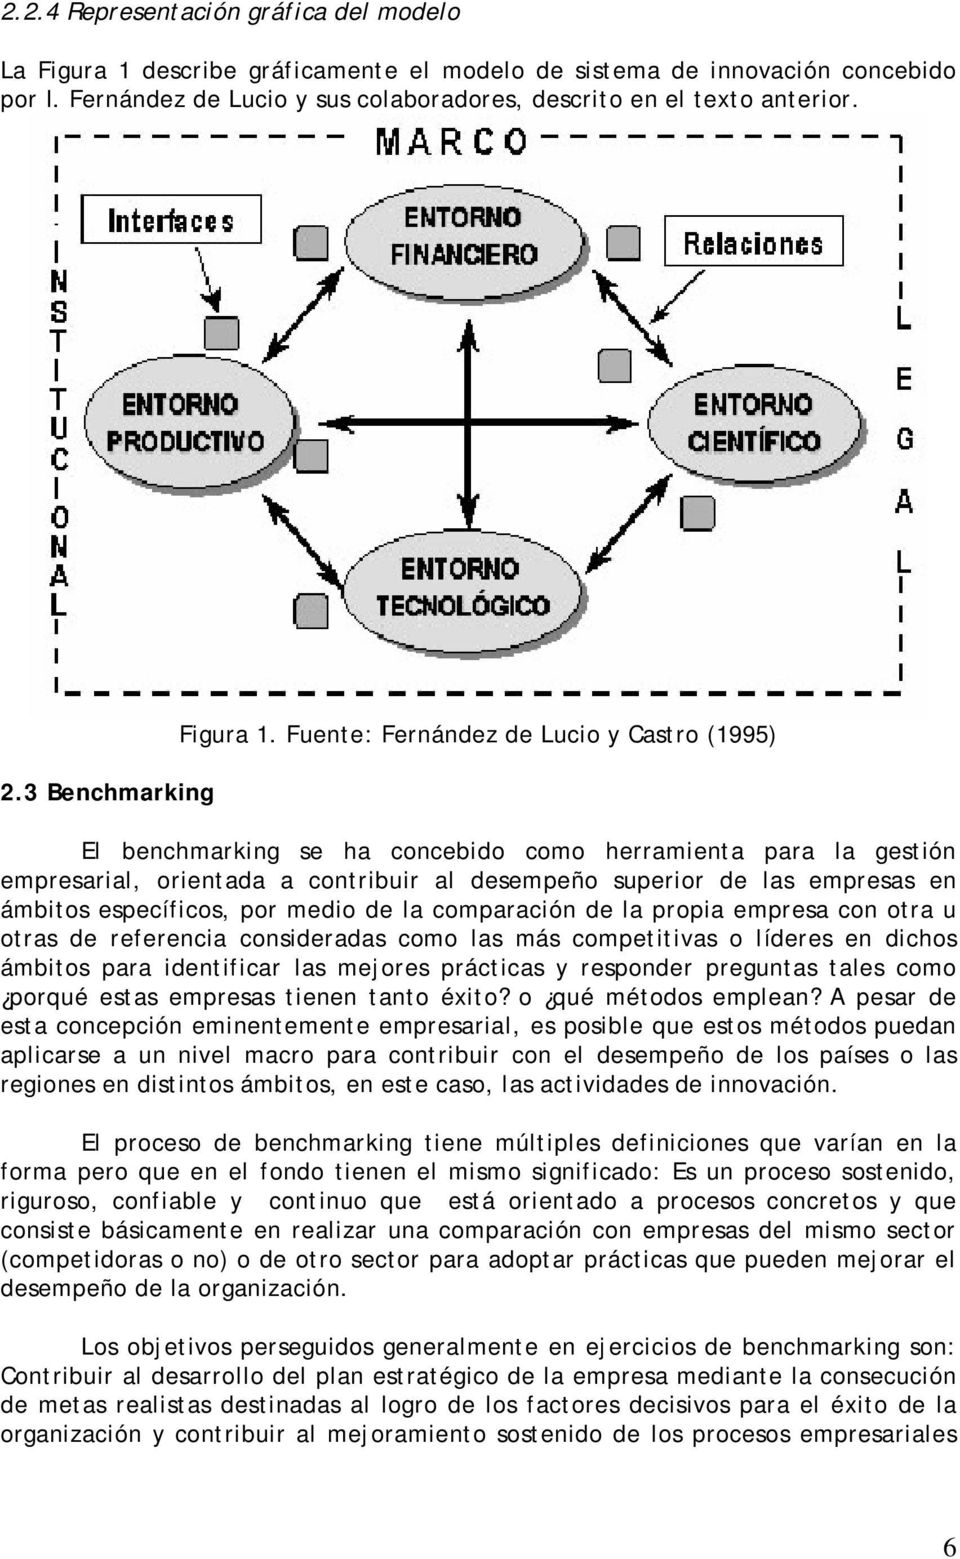 Fuente: Fernández de Lucio y Castro (1995) El benchmarking se ha concebido como herramienta para la gestión empresarial, orientada a contribuir al desempeño superior de las empresas en ámbitos